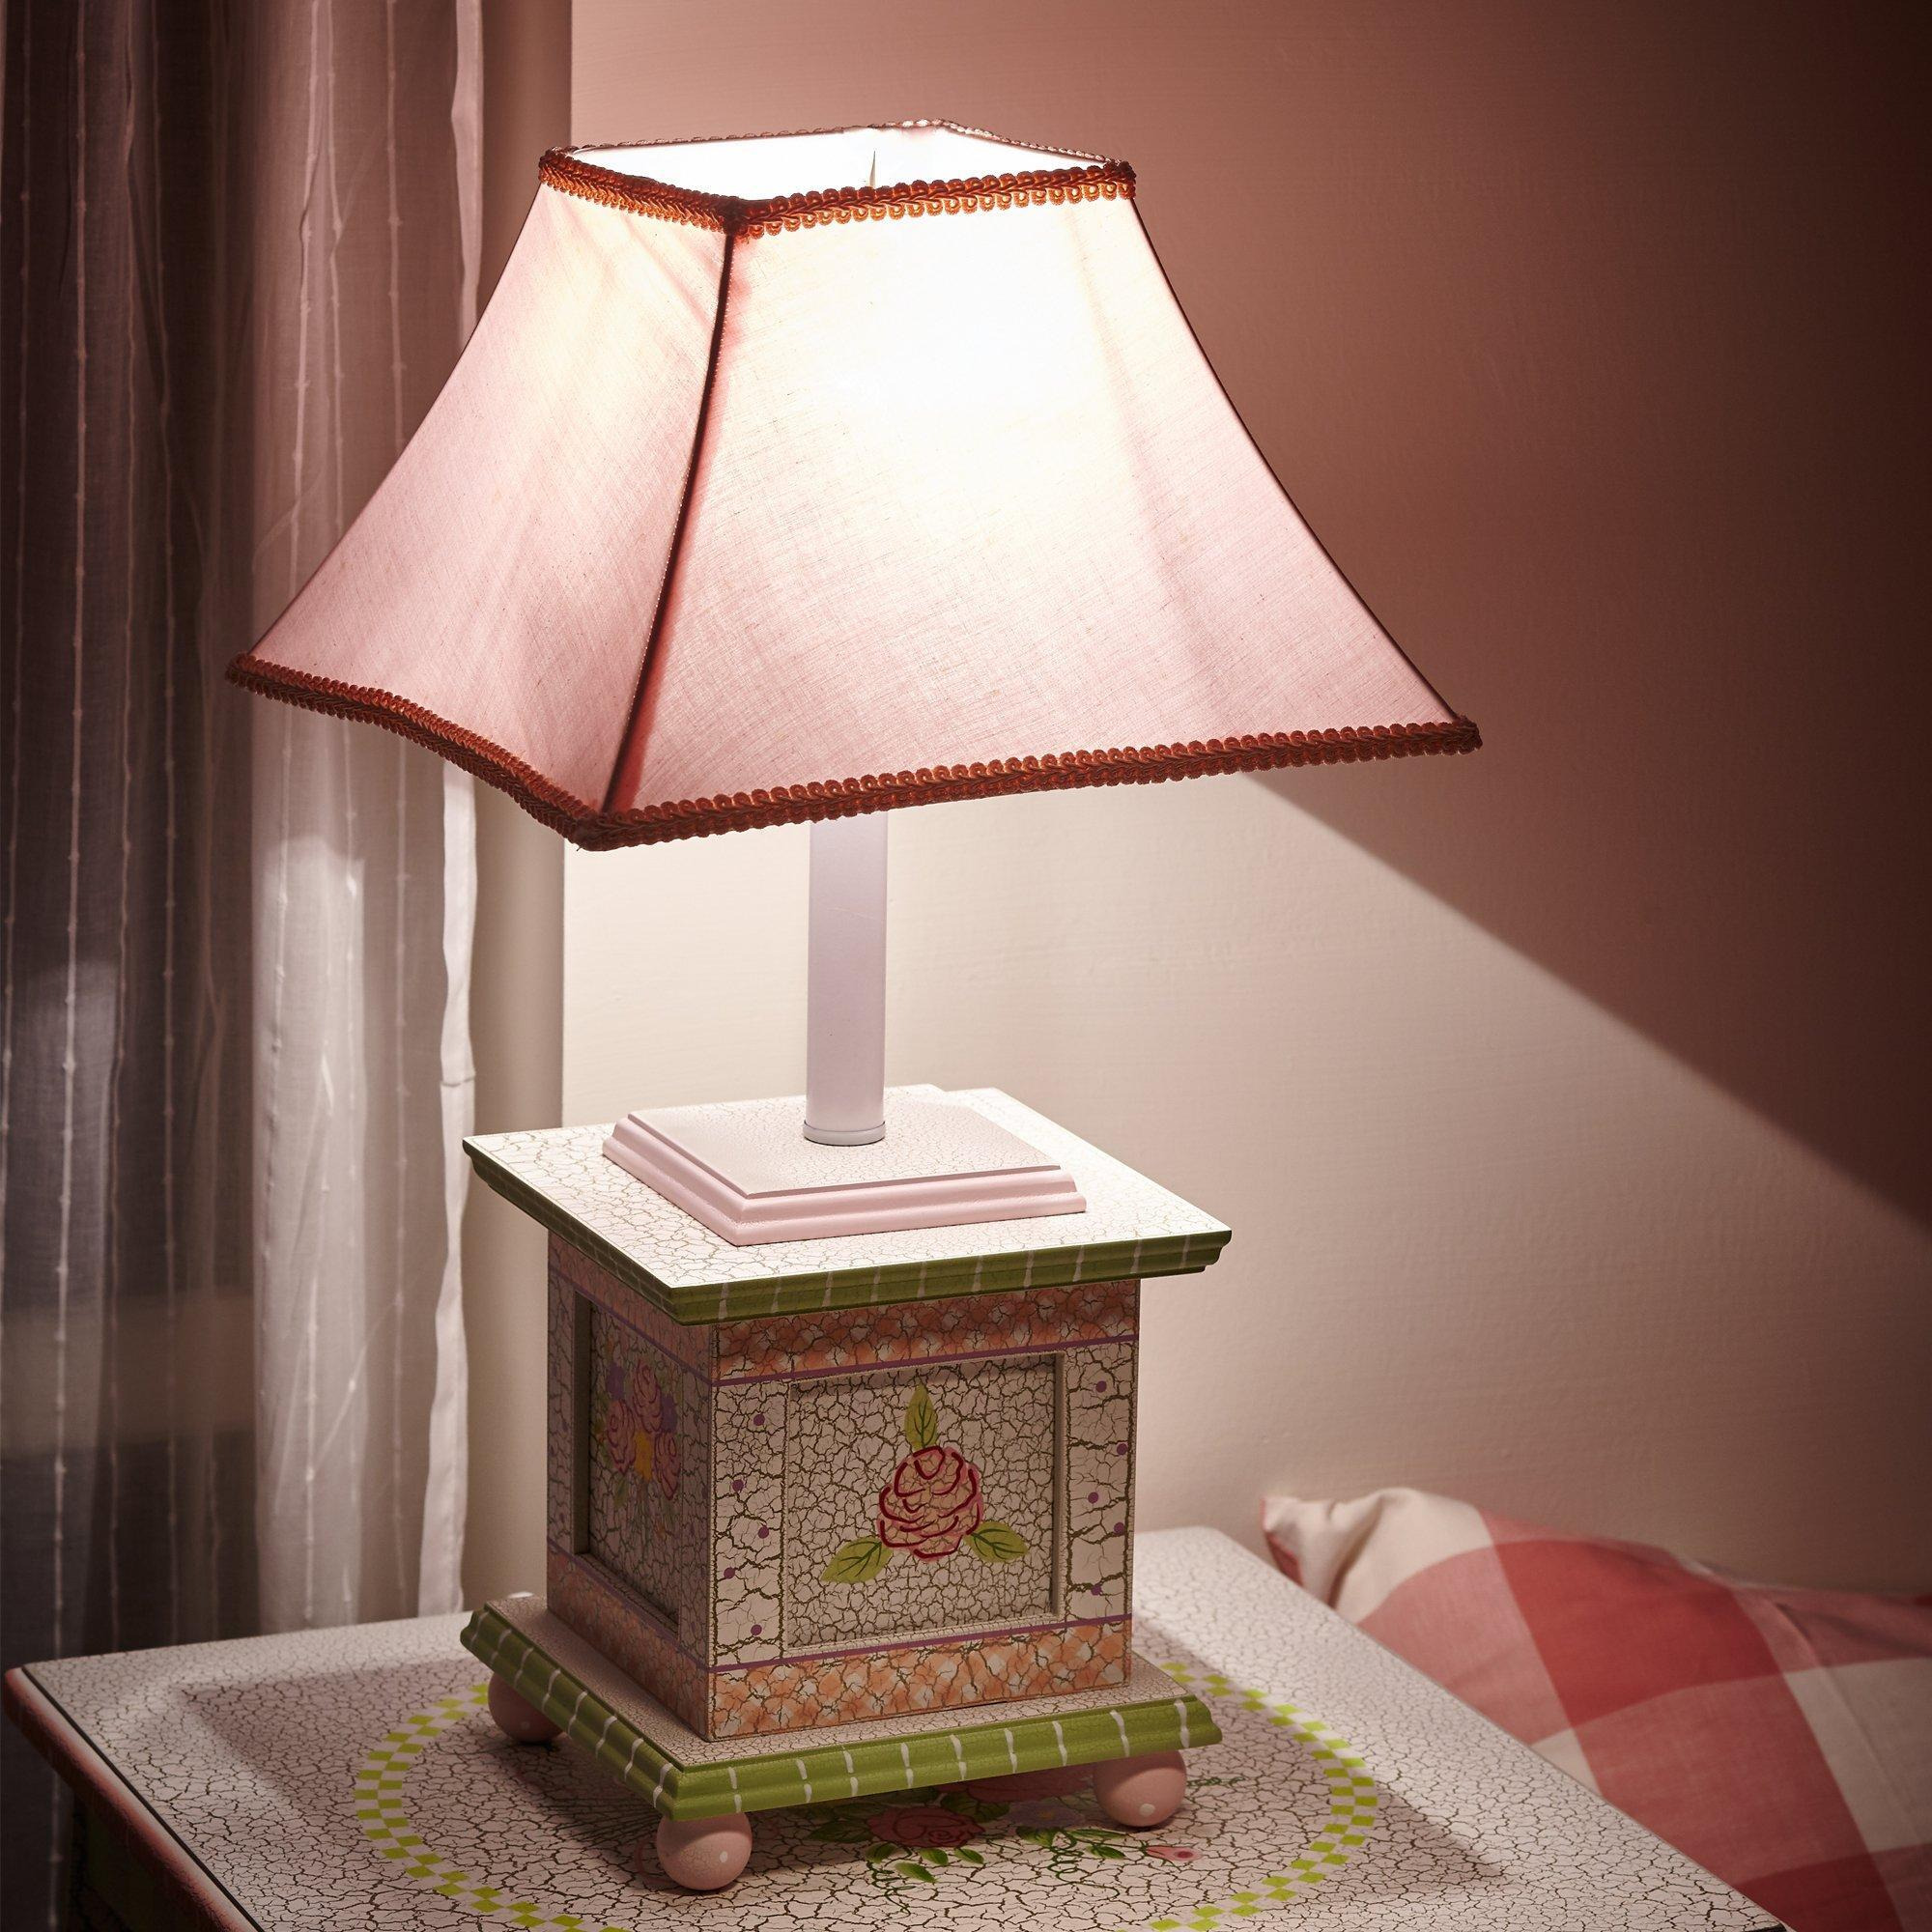 Fantasy Fields Childrens Crackled Rose Bedside Night Light Table Lamp - image 1